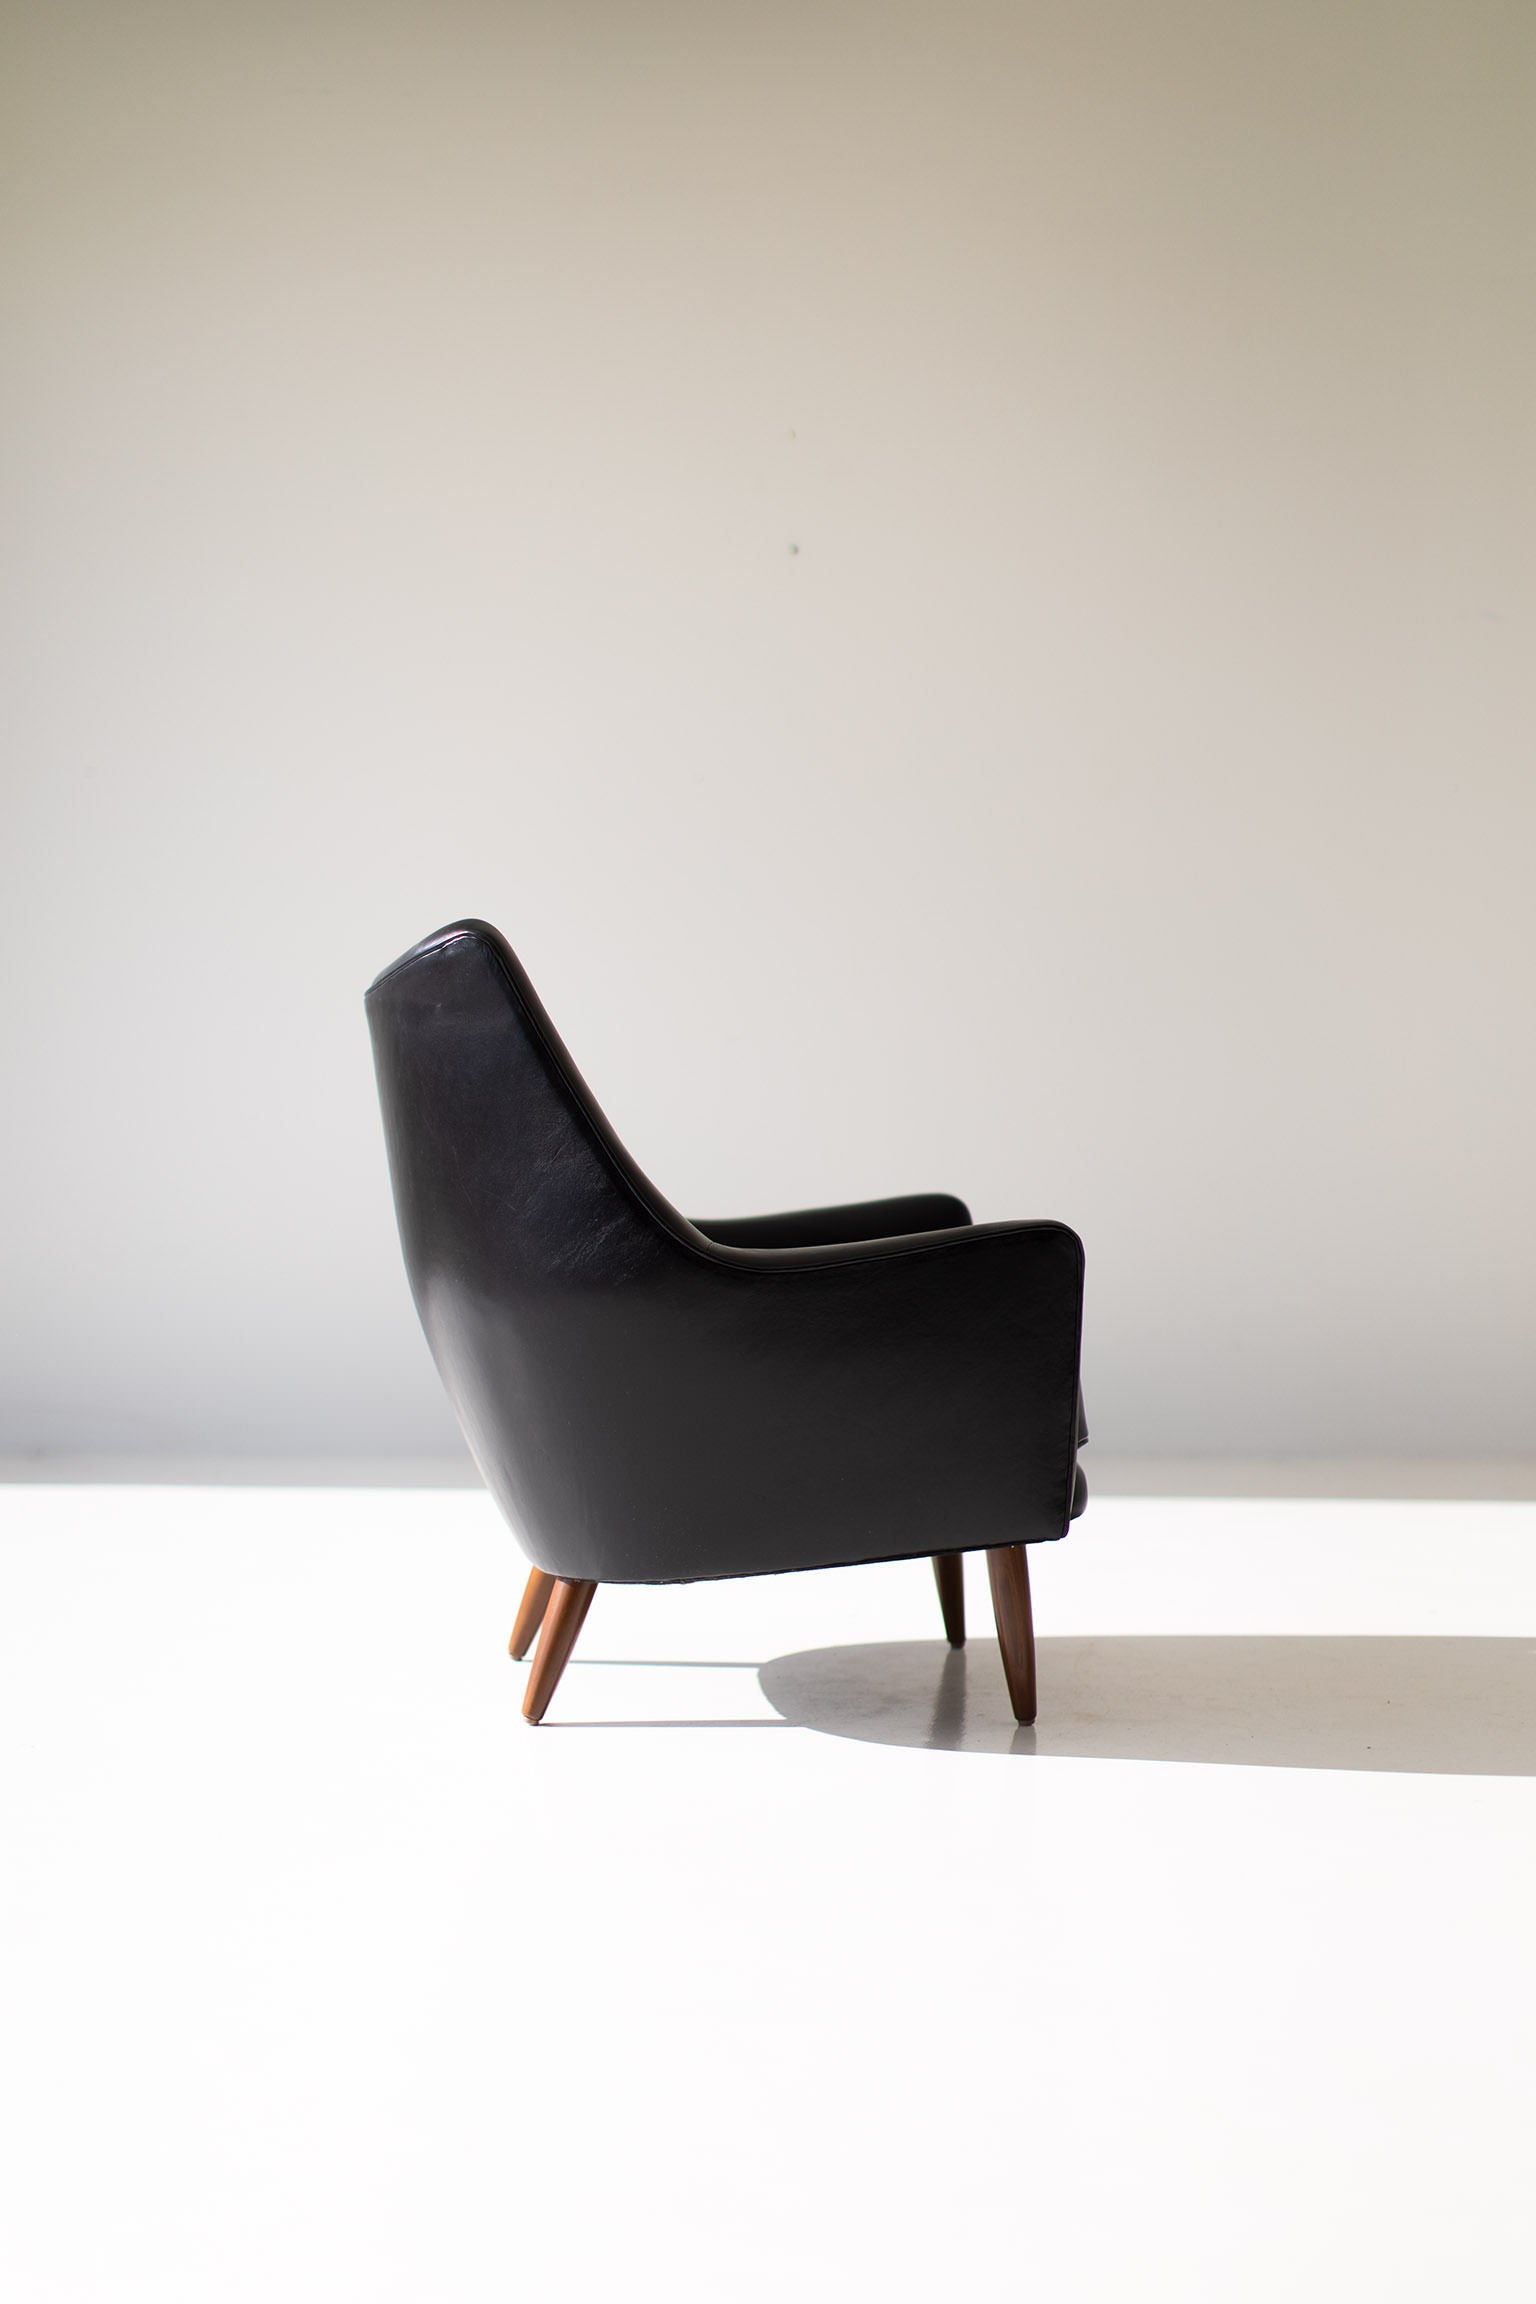 Ib Kofod-Larsen Attributed Lounge Chair - 11211801